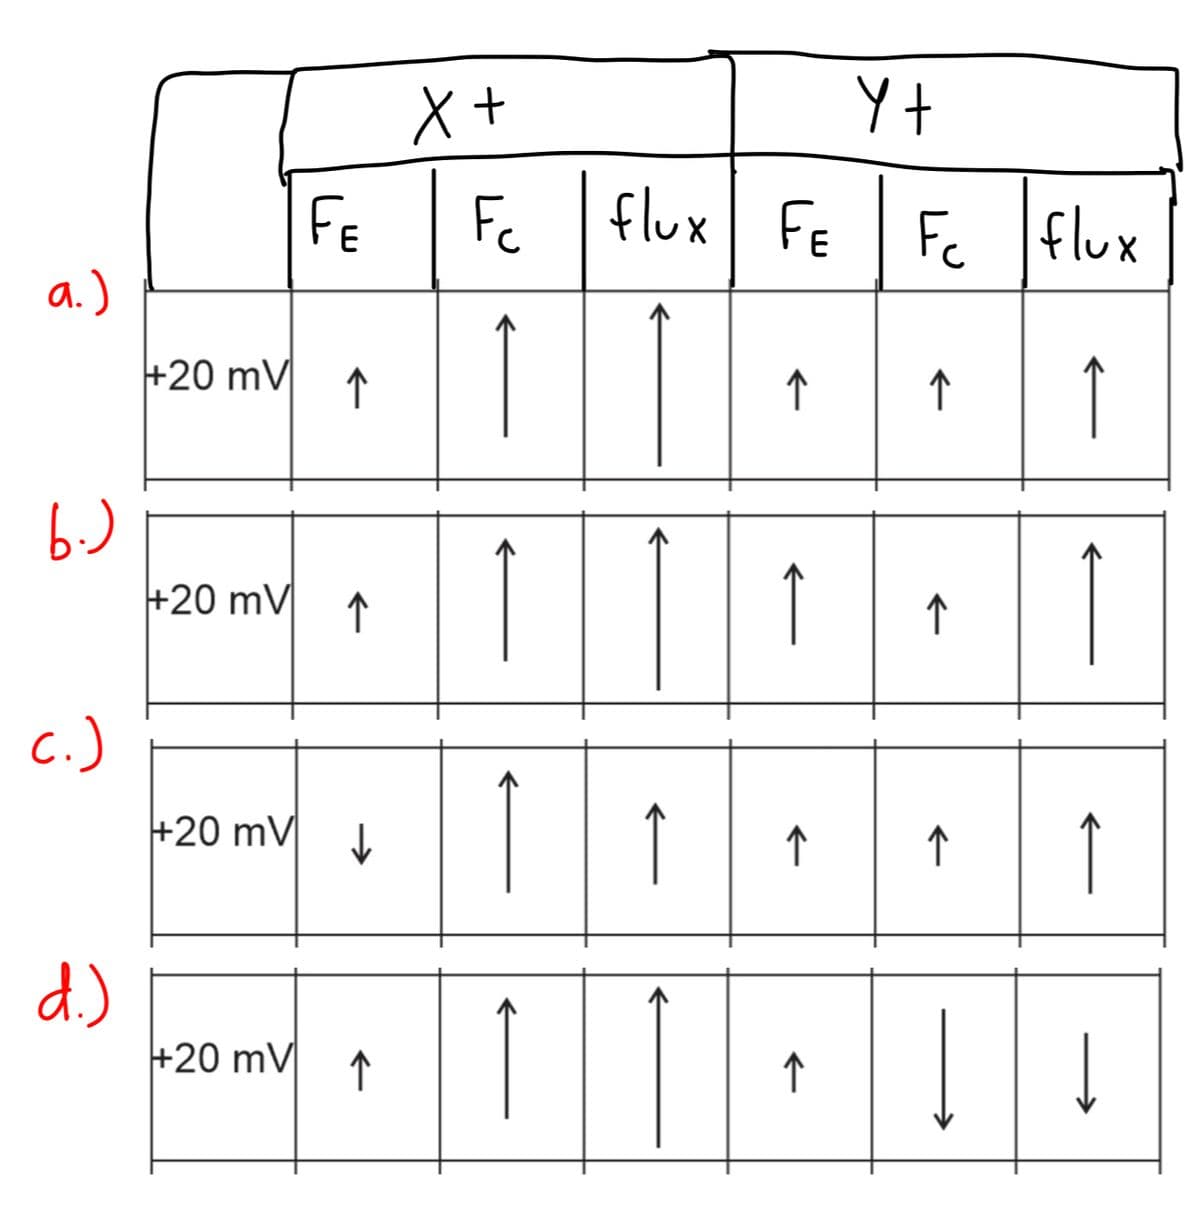 a.)
b.)
c.)
d.)
+20 mV
+20 mV
FE
+20 mV
↑
↑
+20 mV↓↓
↑
X+
Fc
Î
Î
↑
↑
flux FE
↑
↑
↑
↑
Y t
Fc flux
↑
↑
↑
->>
↑
←←
↓